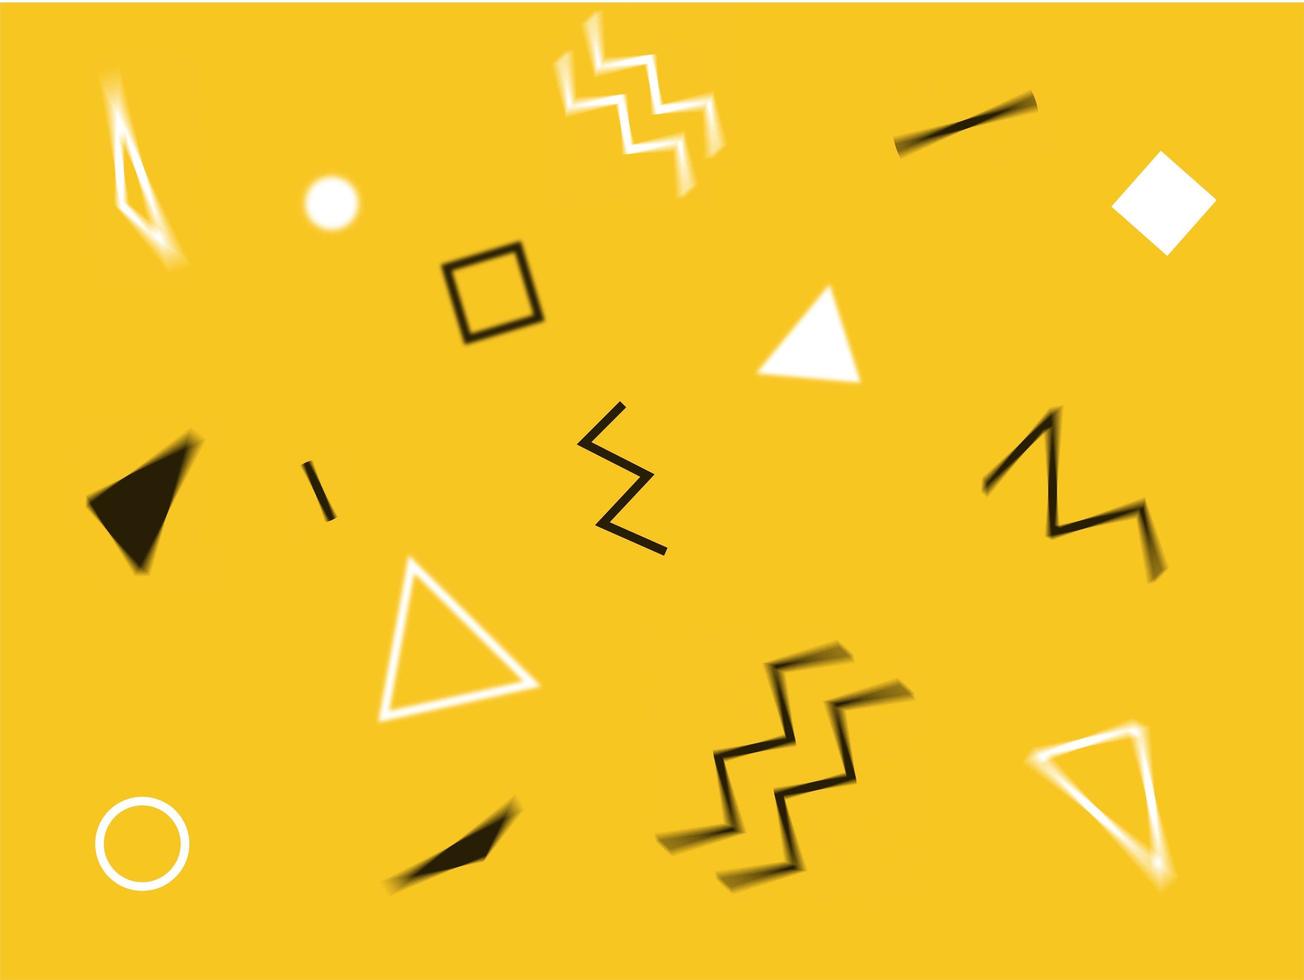 abstrakt geometrisk design gul bakgrund med trianglar, cirklar, rader och sicksackar. memphis stil med geometrisk former foto